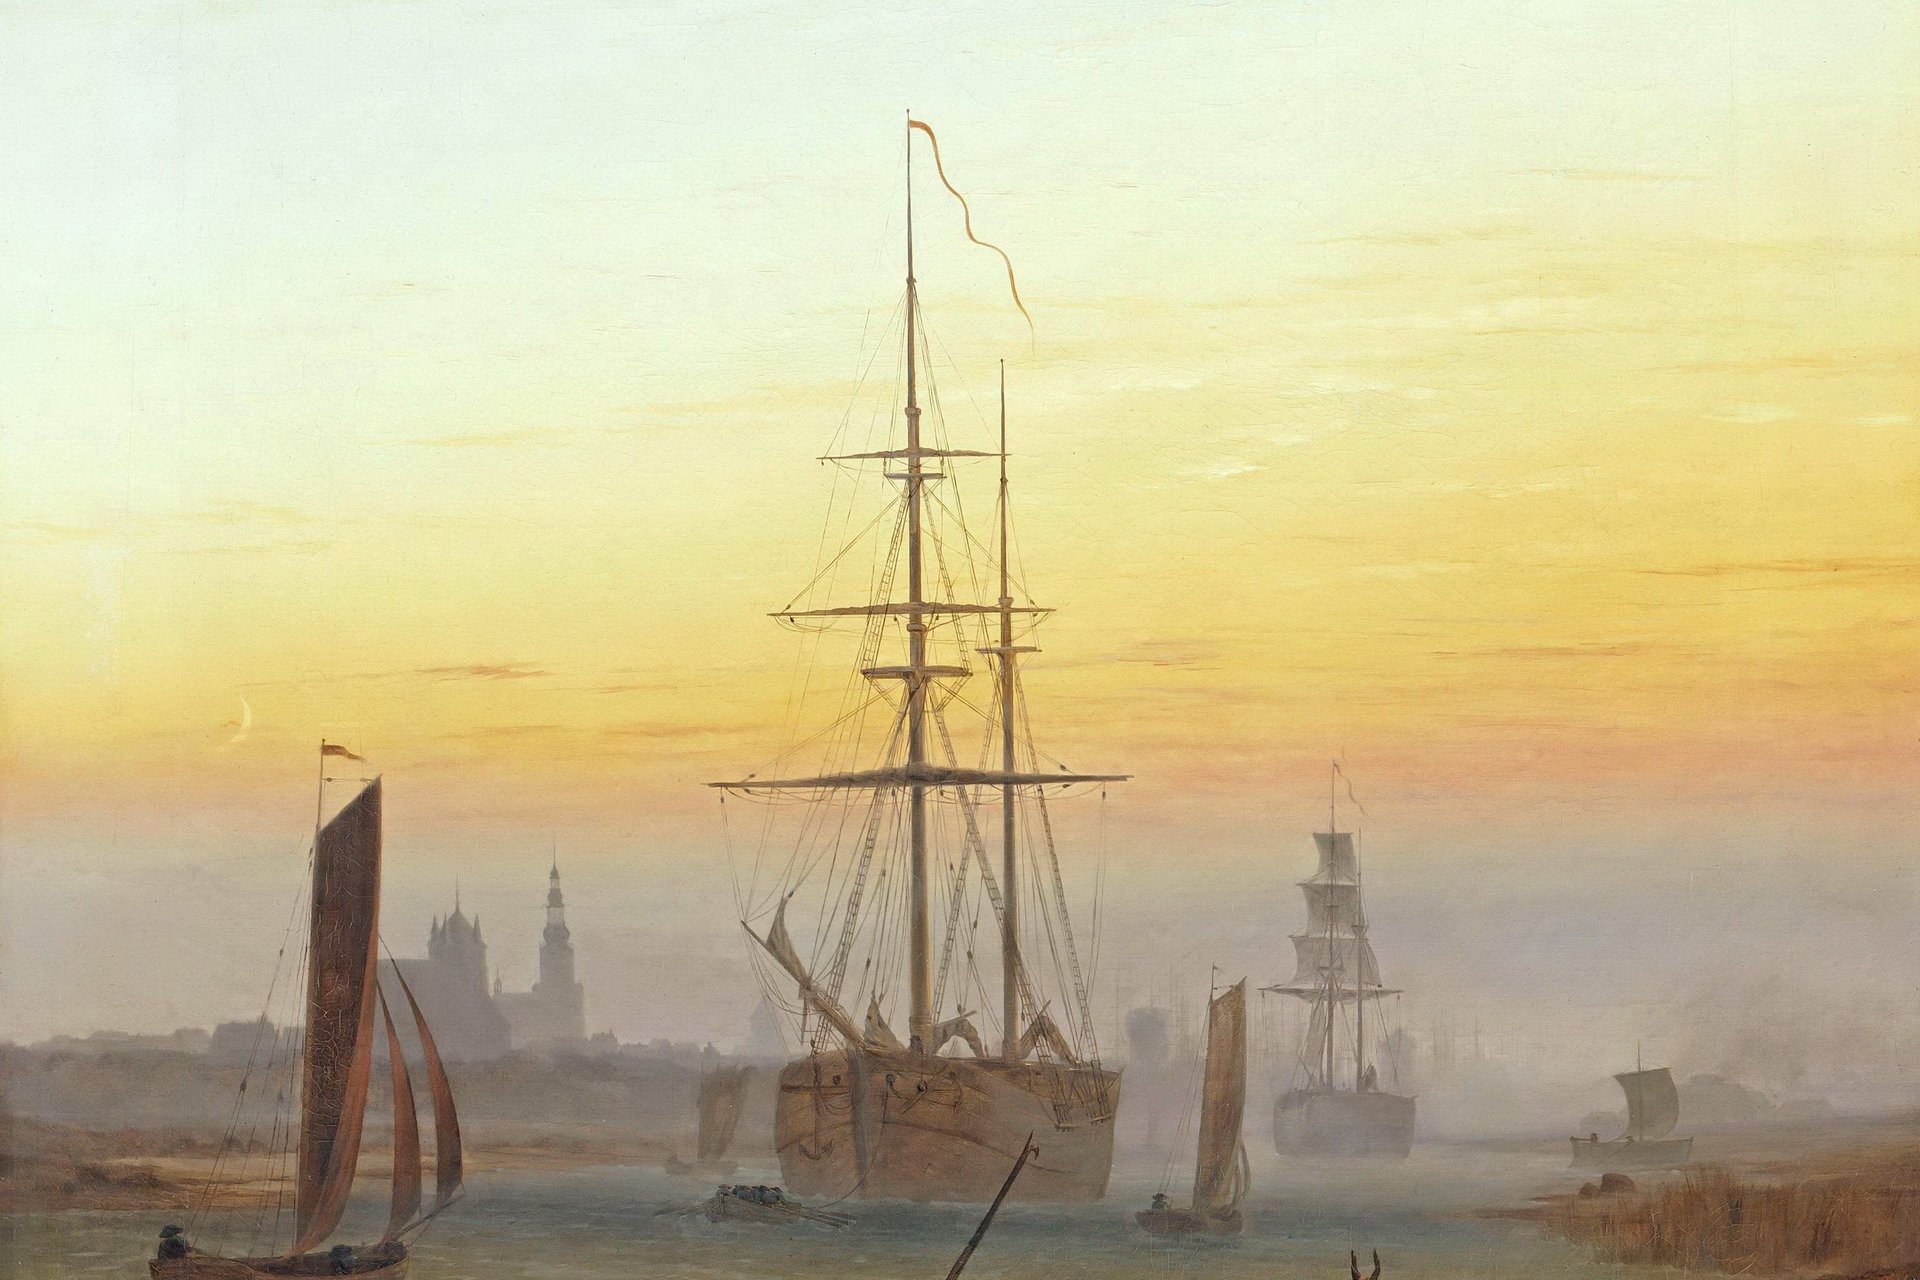 Gemälde: Obere Bildhälfte gold-blauer Himmel, ind er Bildmitte die Stadtsilhouette Greifswalds in der Ferne, davor Segelschiffe auf einem Fluss. Im dunkleren Vordergrund mittig eine Person mit Hut, nach links gehend.